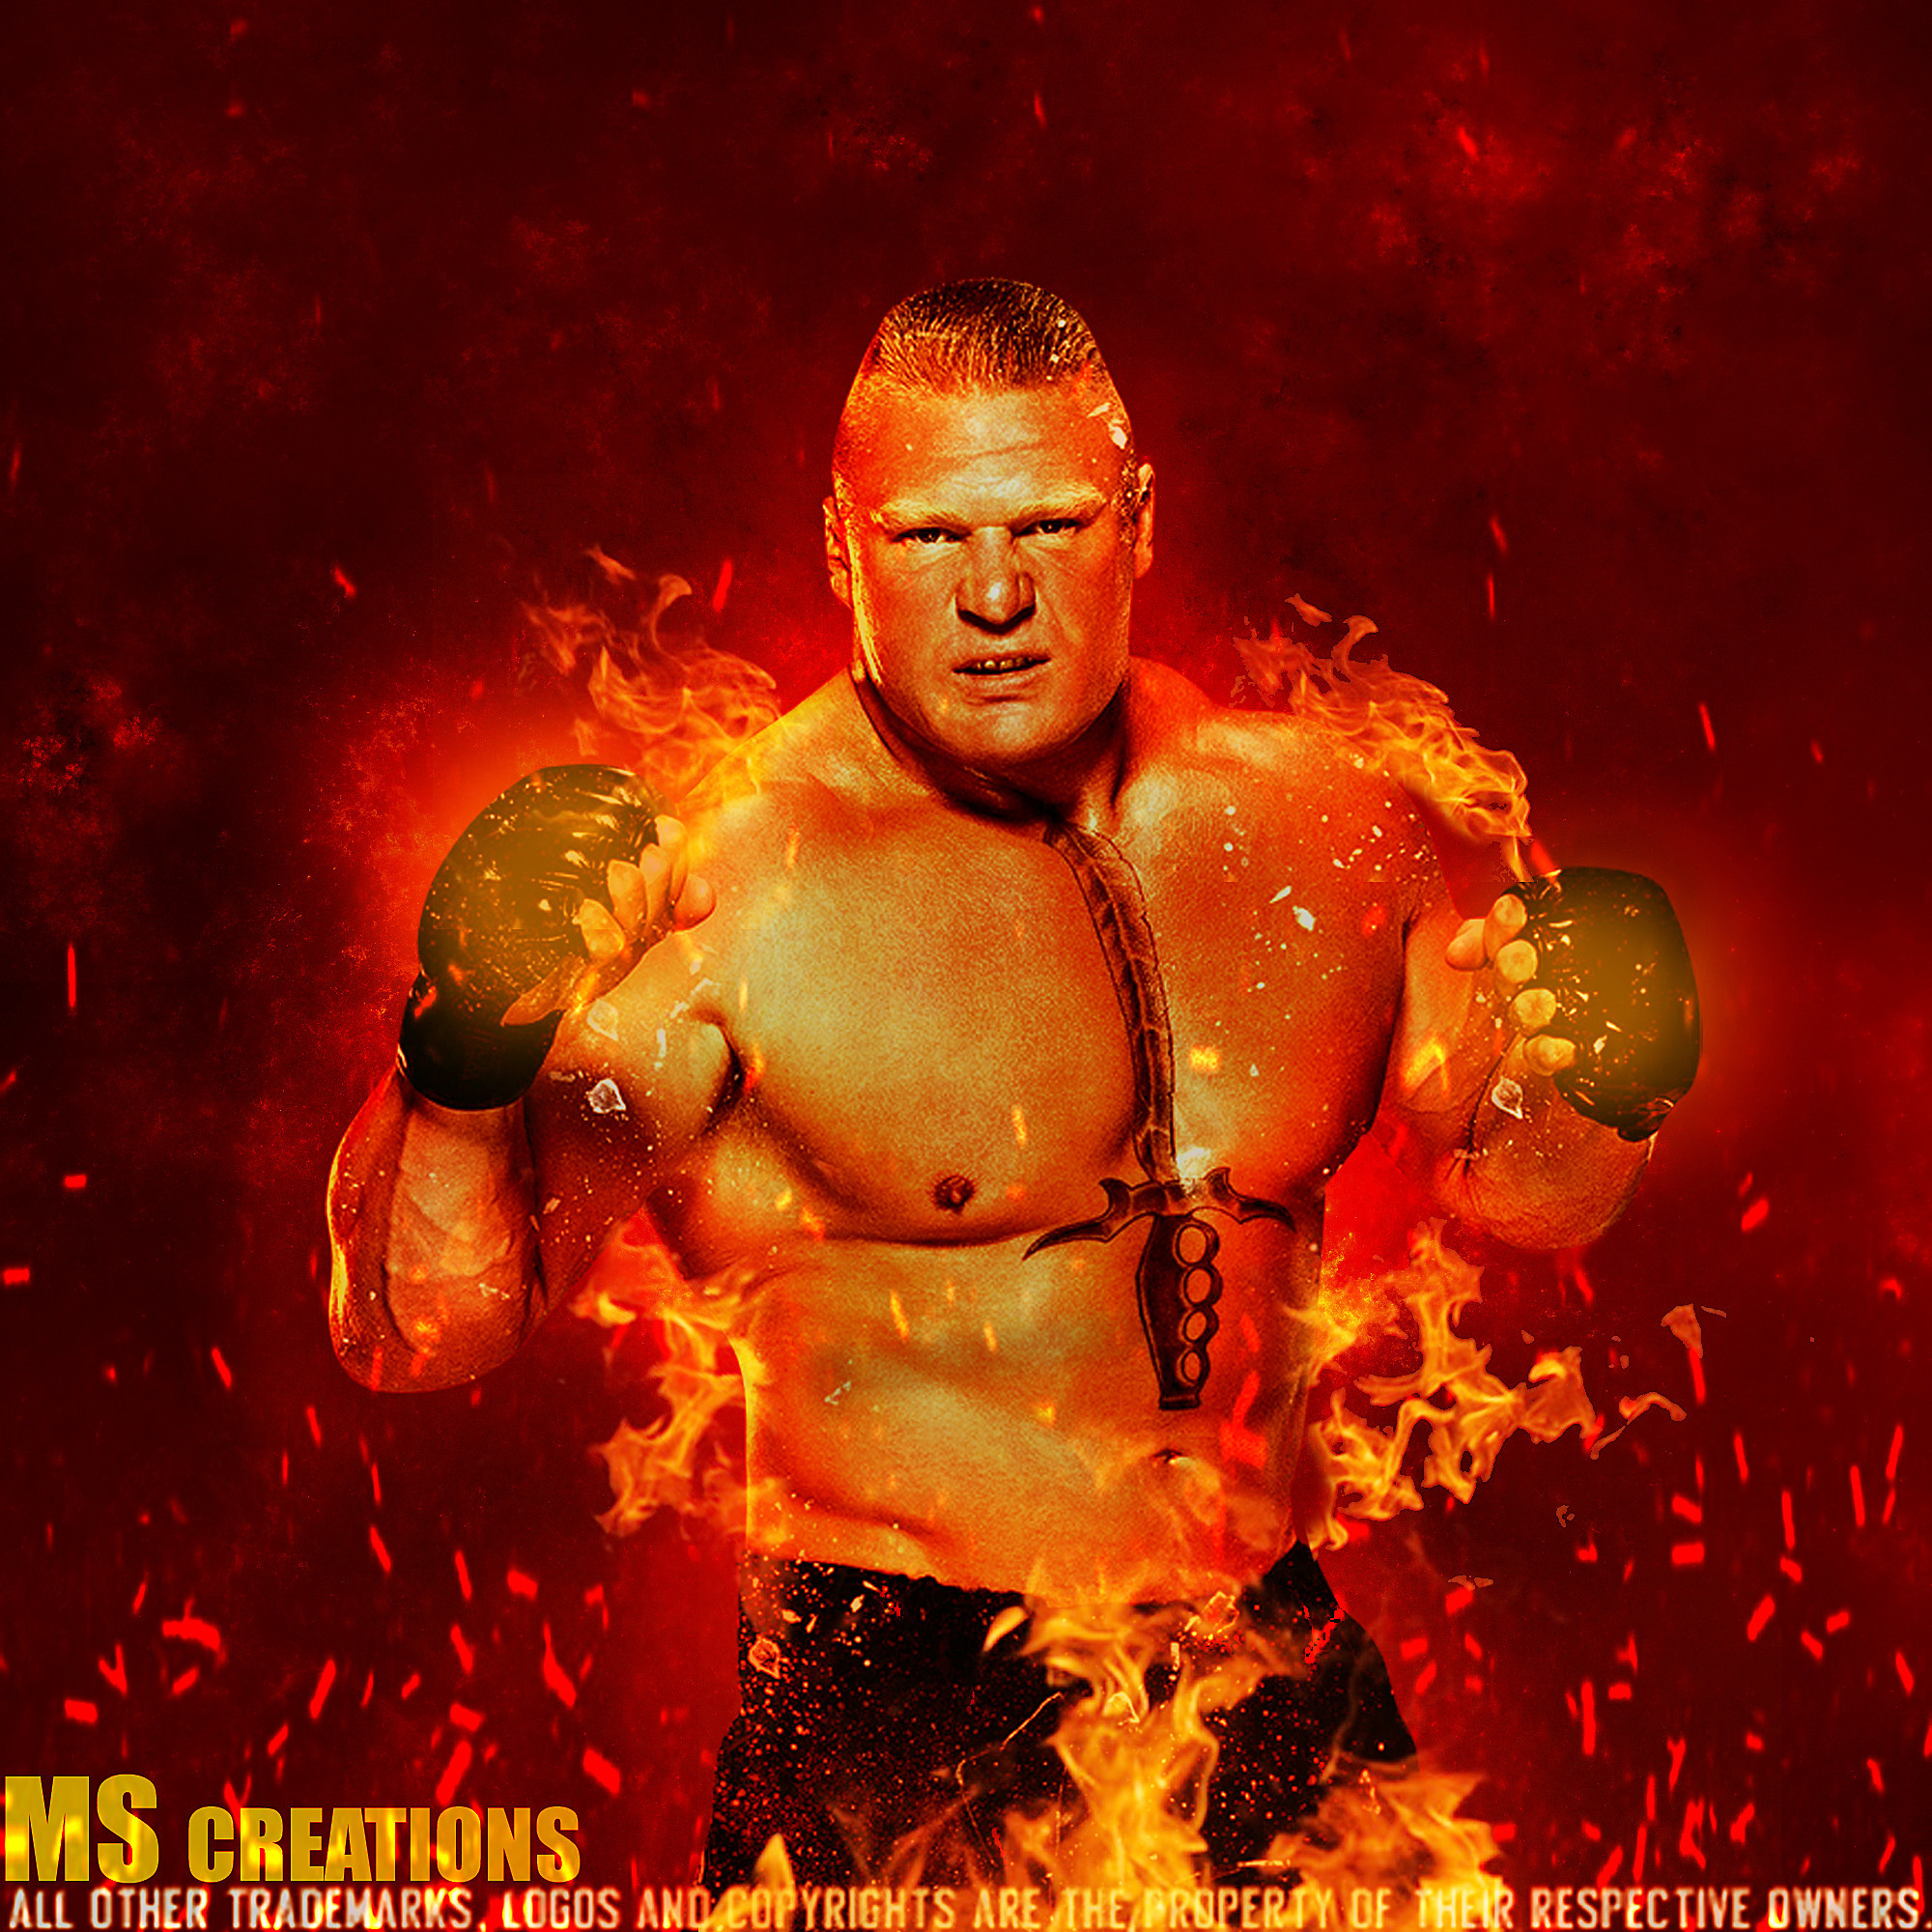 Brock Lesnar  Kupy Wrestling Wallpapers